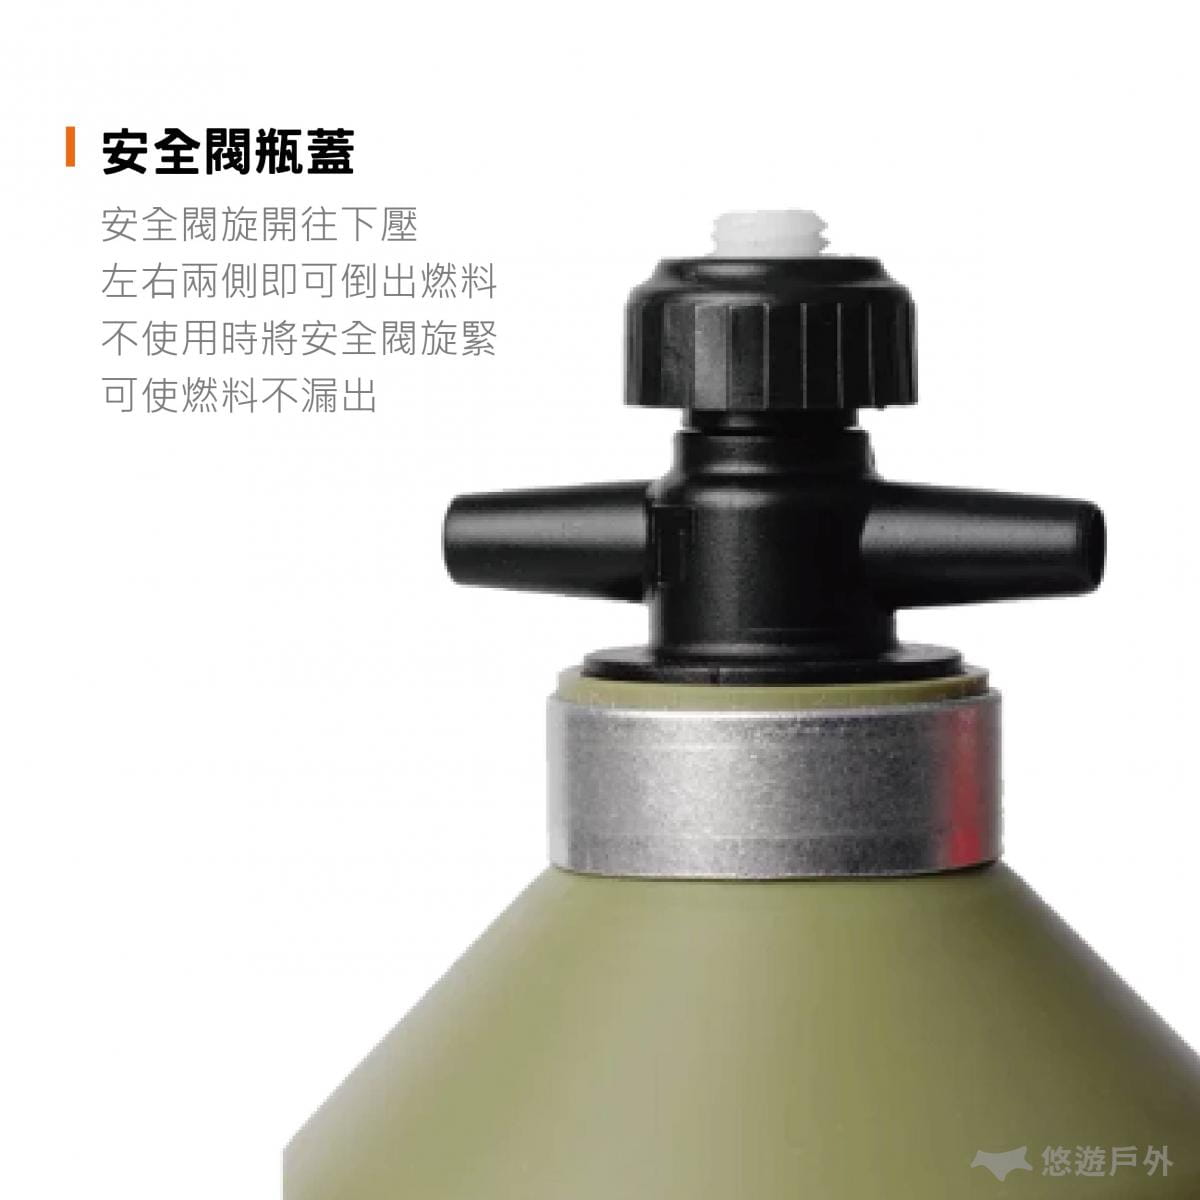 燃料瓶 油瓶【公司貨】Trangia Fuel Bottle (經典紅_0.5L) 悠遊戶外 1